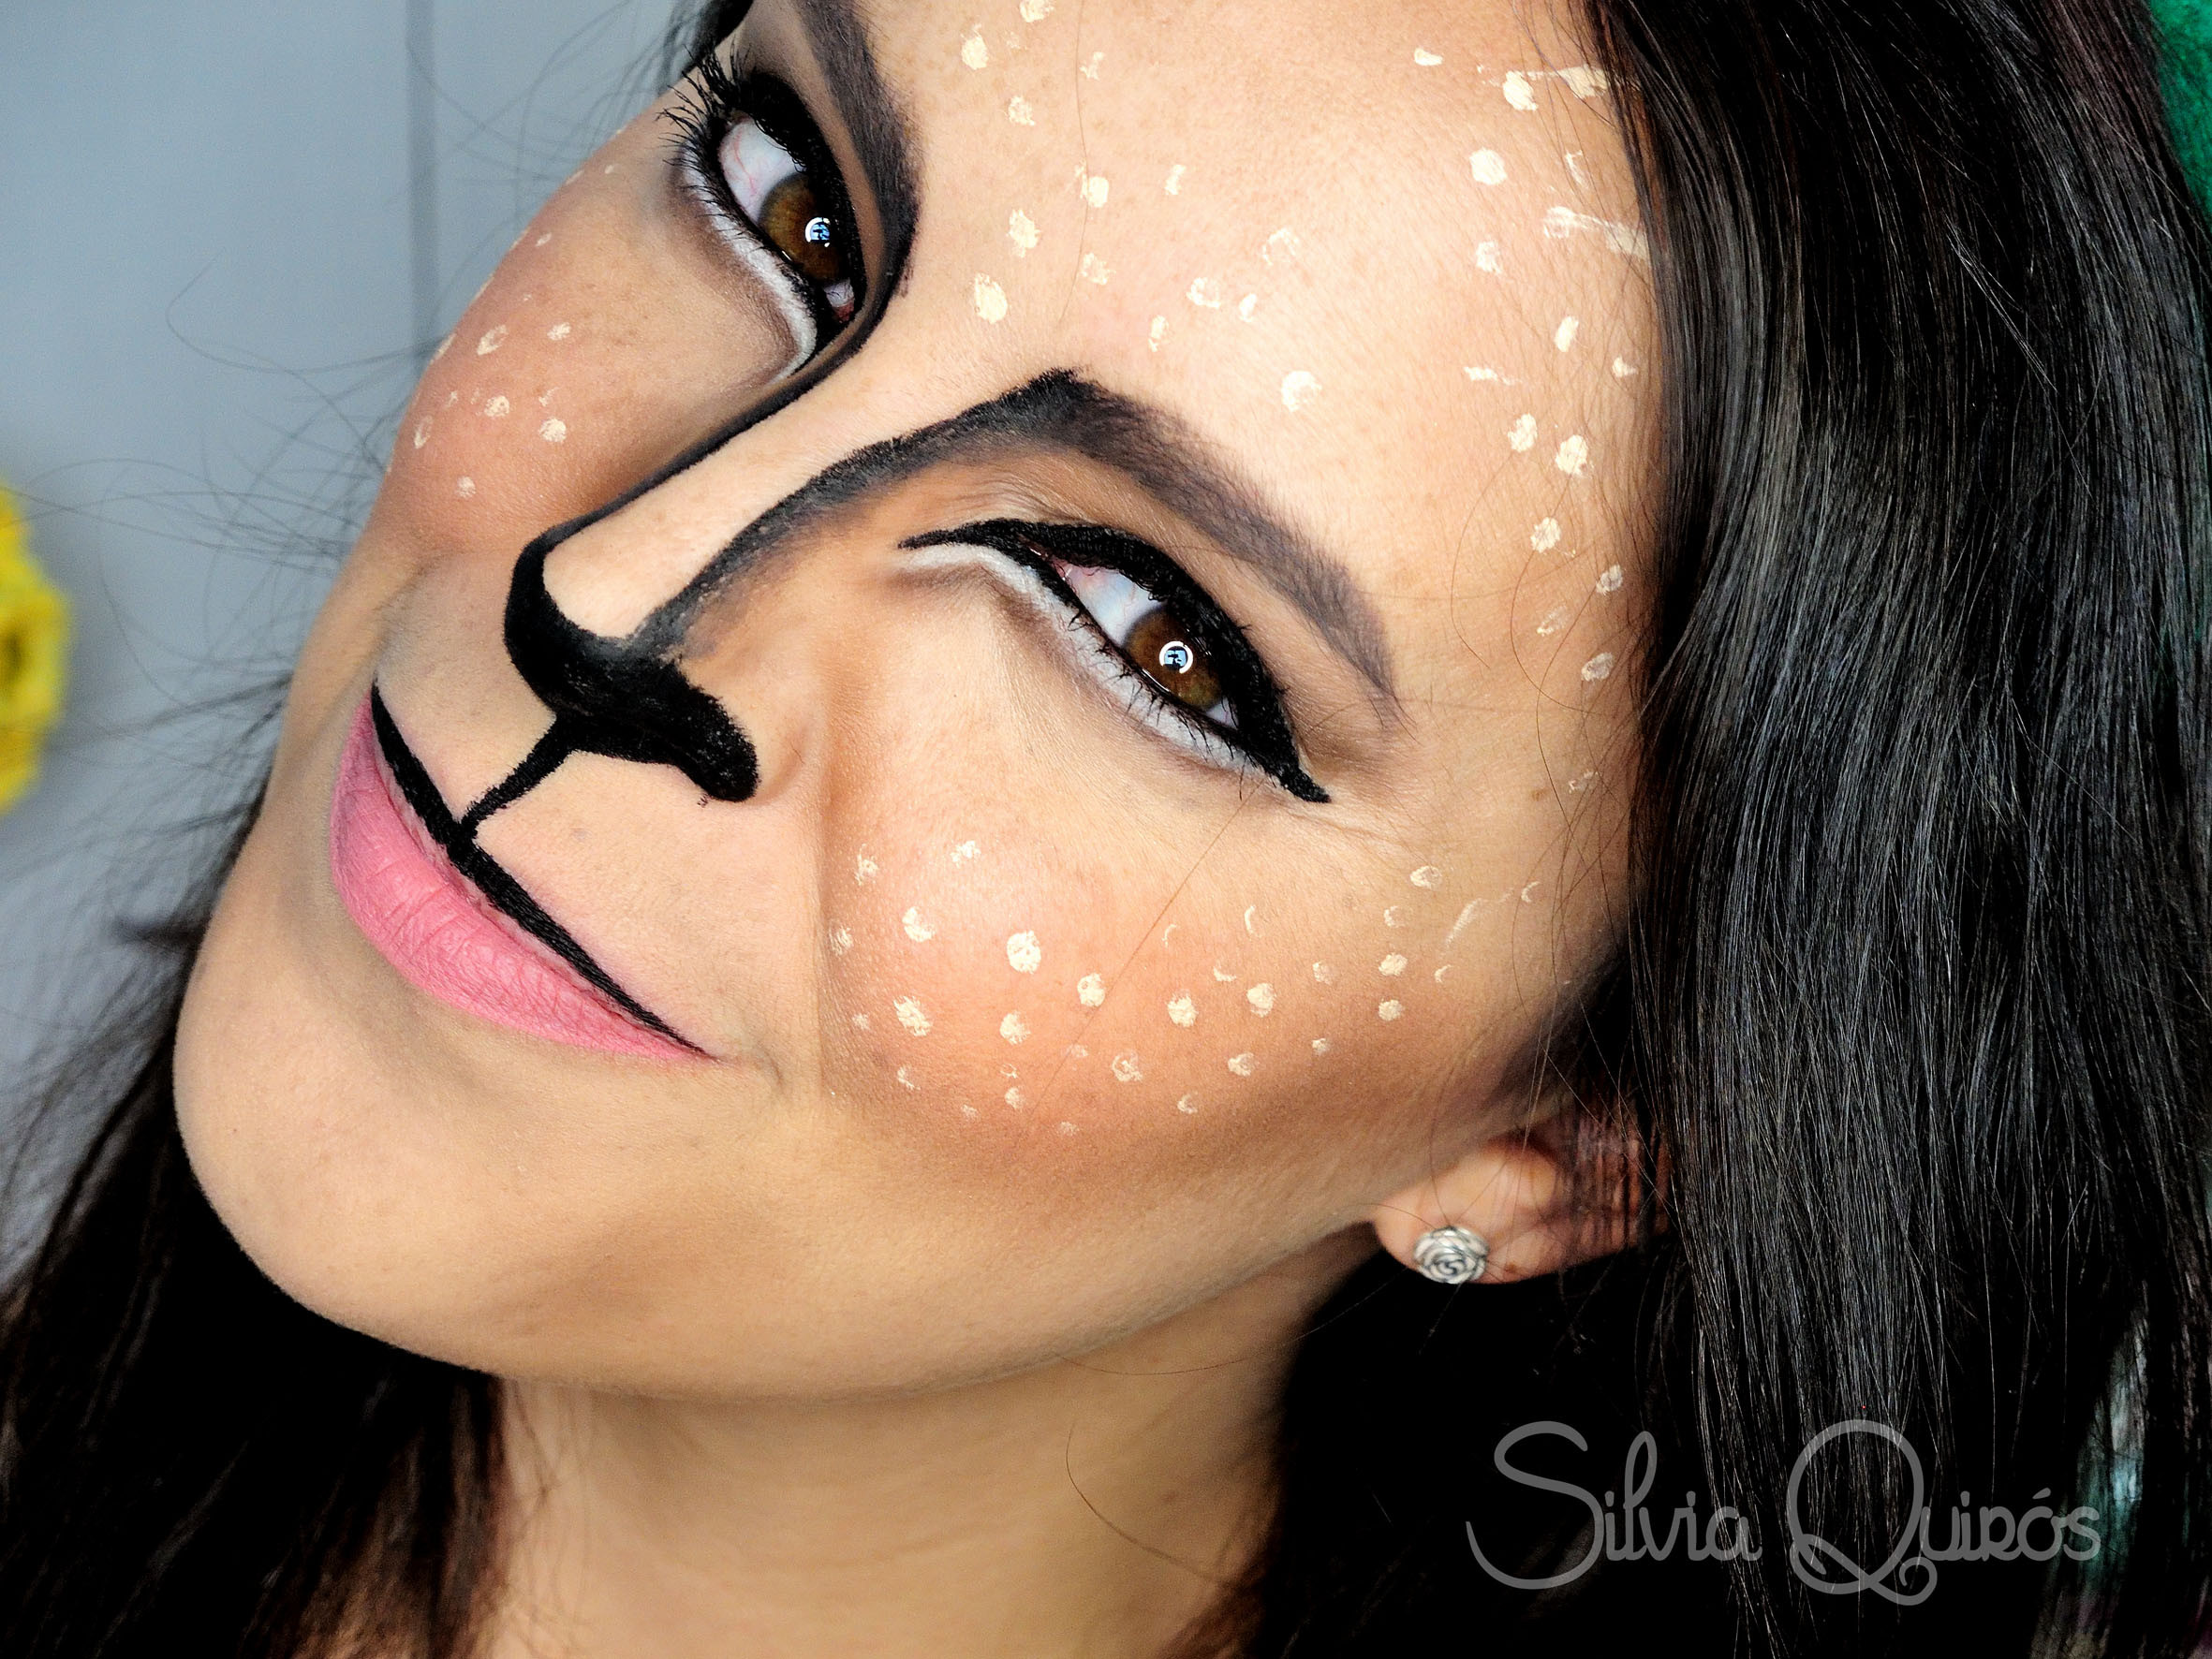 Maquillaje Reno dulce tutorial - Silvia Quirós